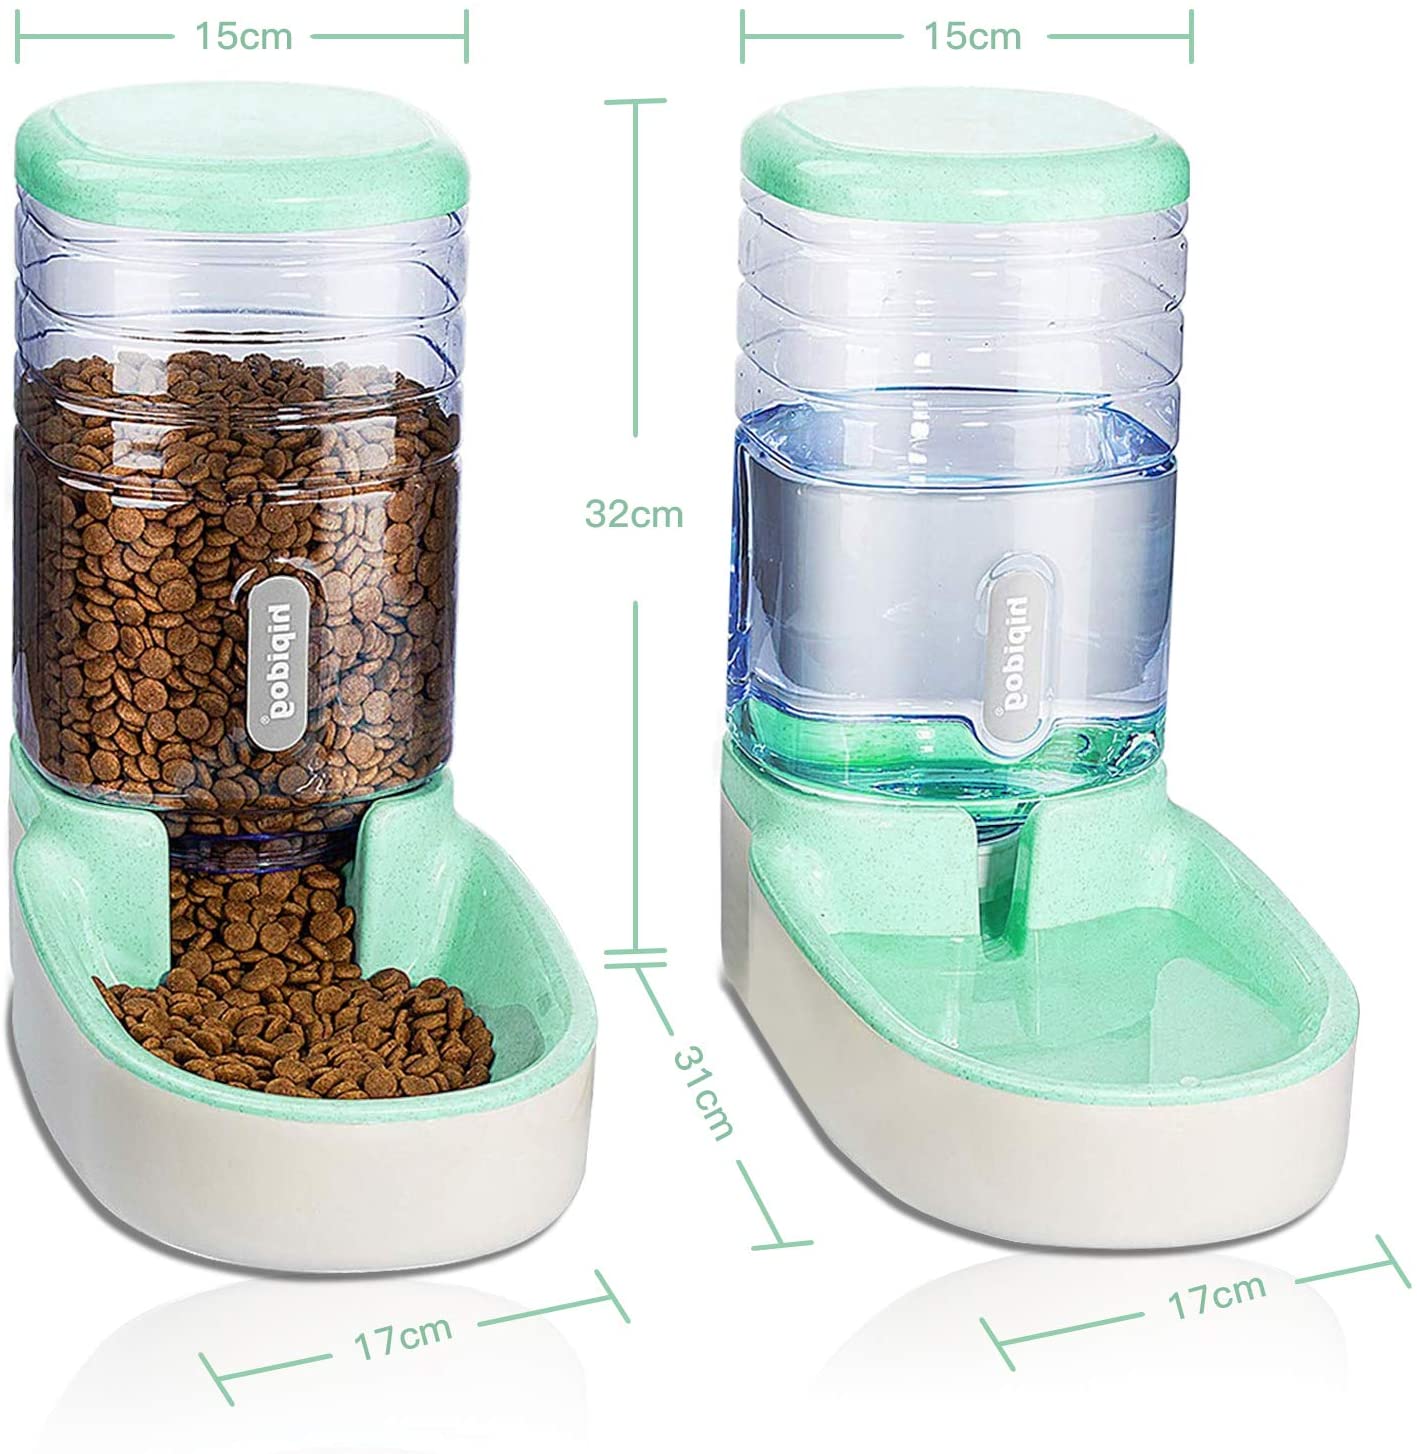  UniqueFit Pets Gatos Perros Riego automático y alimentador de Alimentos 3.8 L con 1 * dispensador de Agua y 1 * alimentador automático para Mascotas (Verde) 